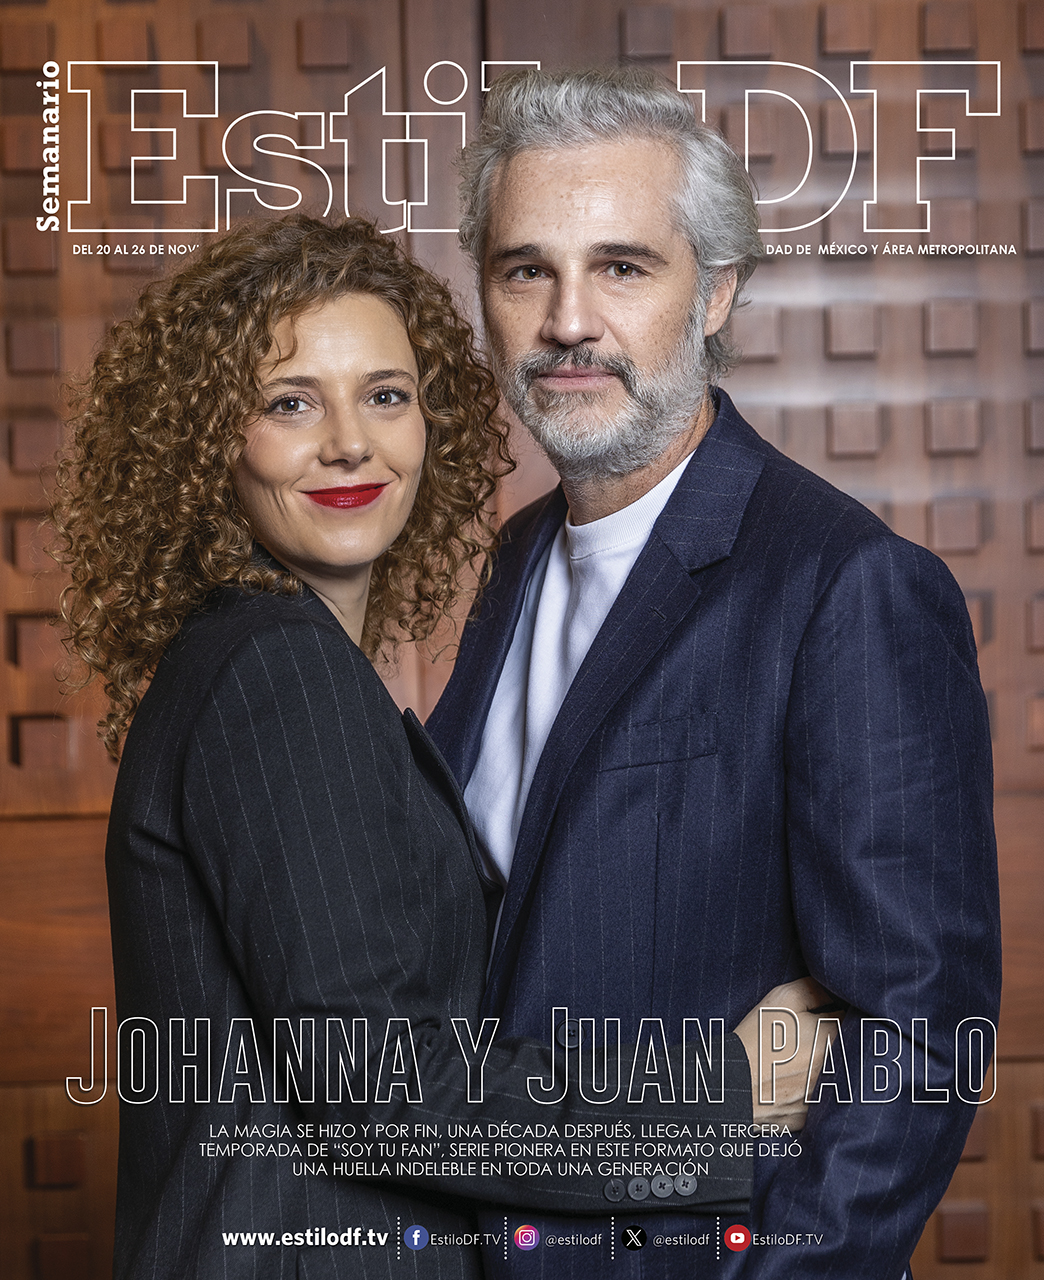 EstiloDF Johanna y Juan Pablo Medina